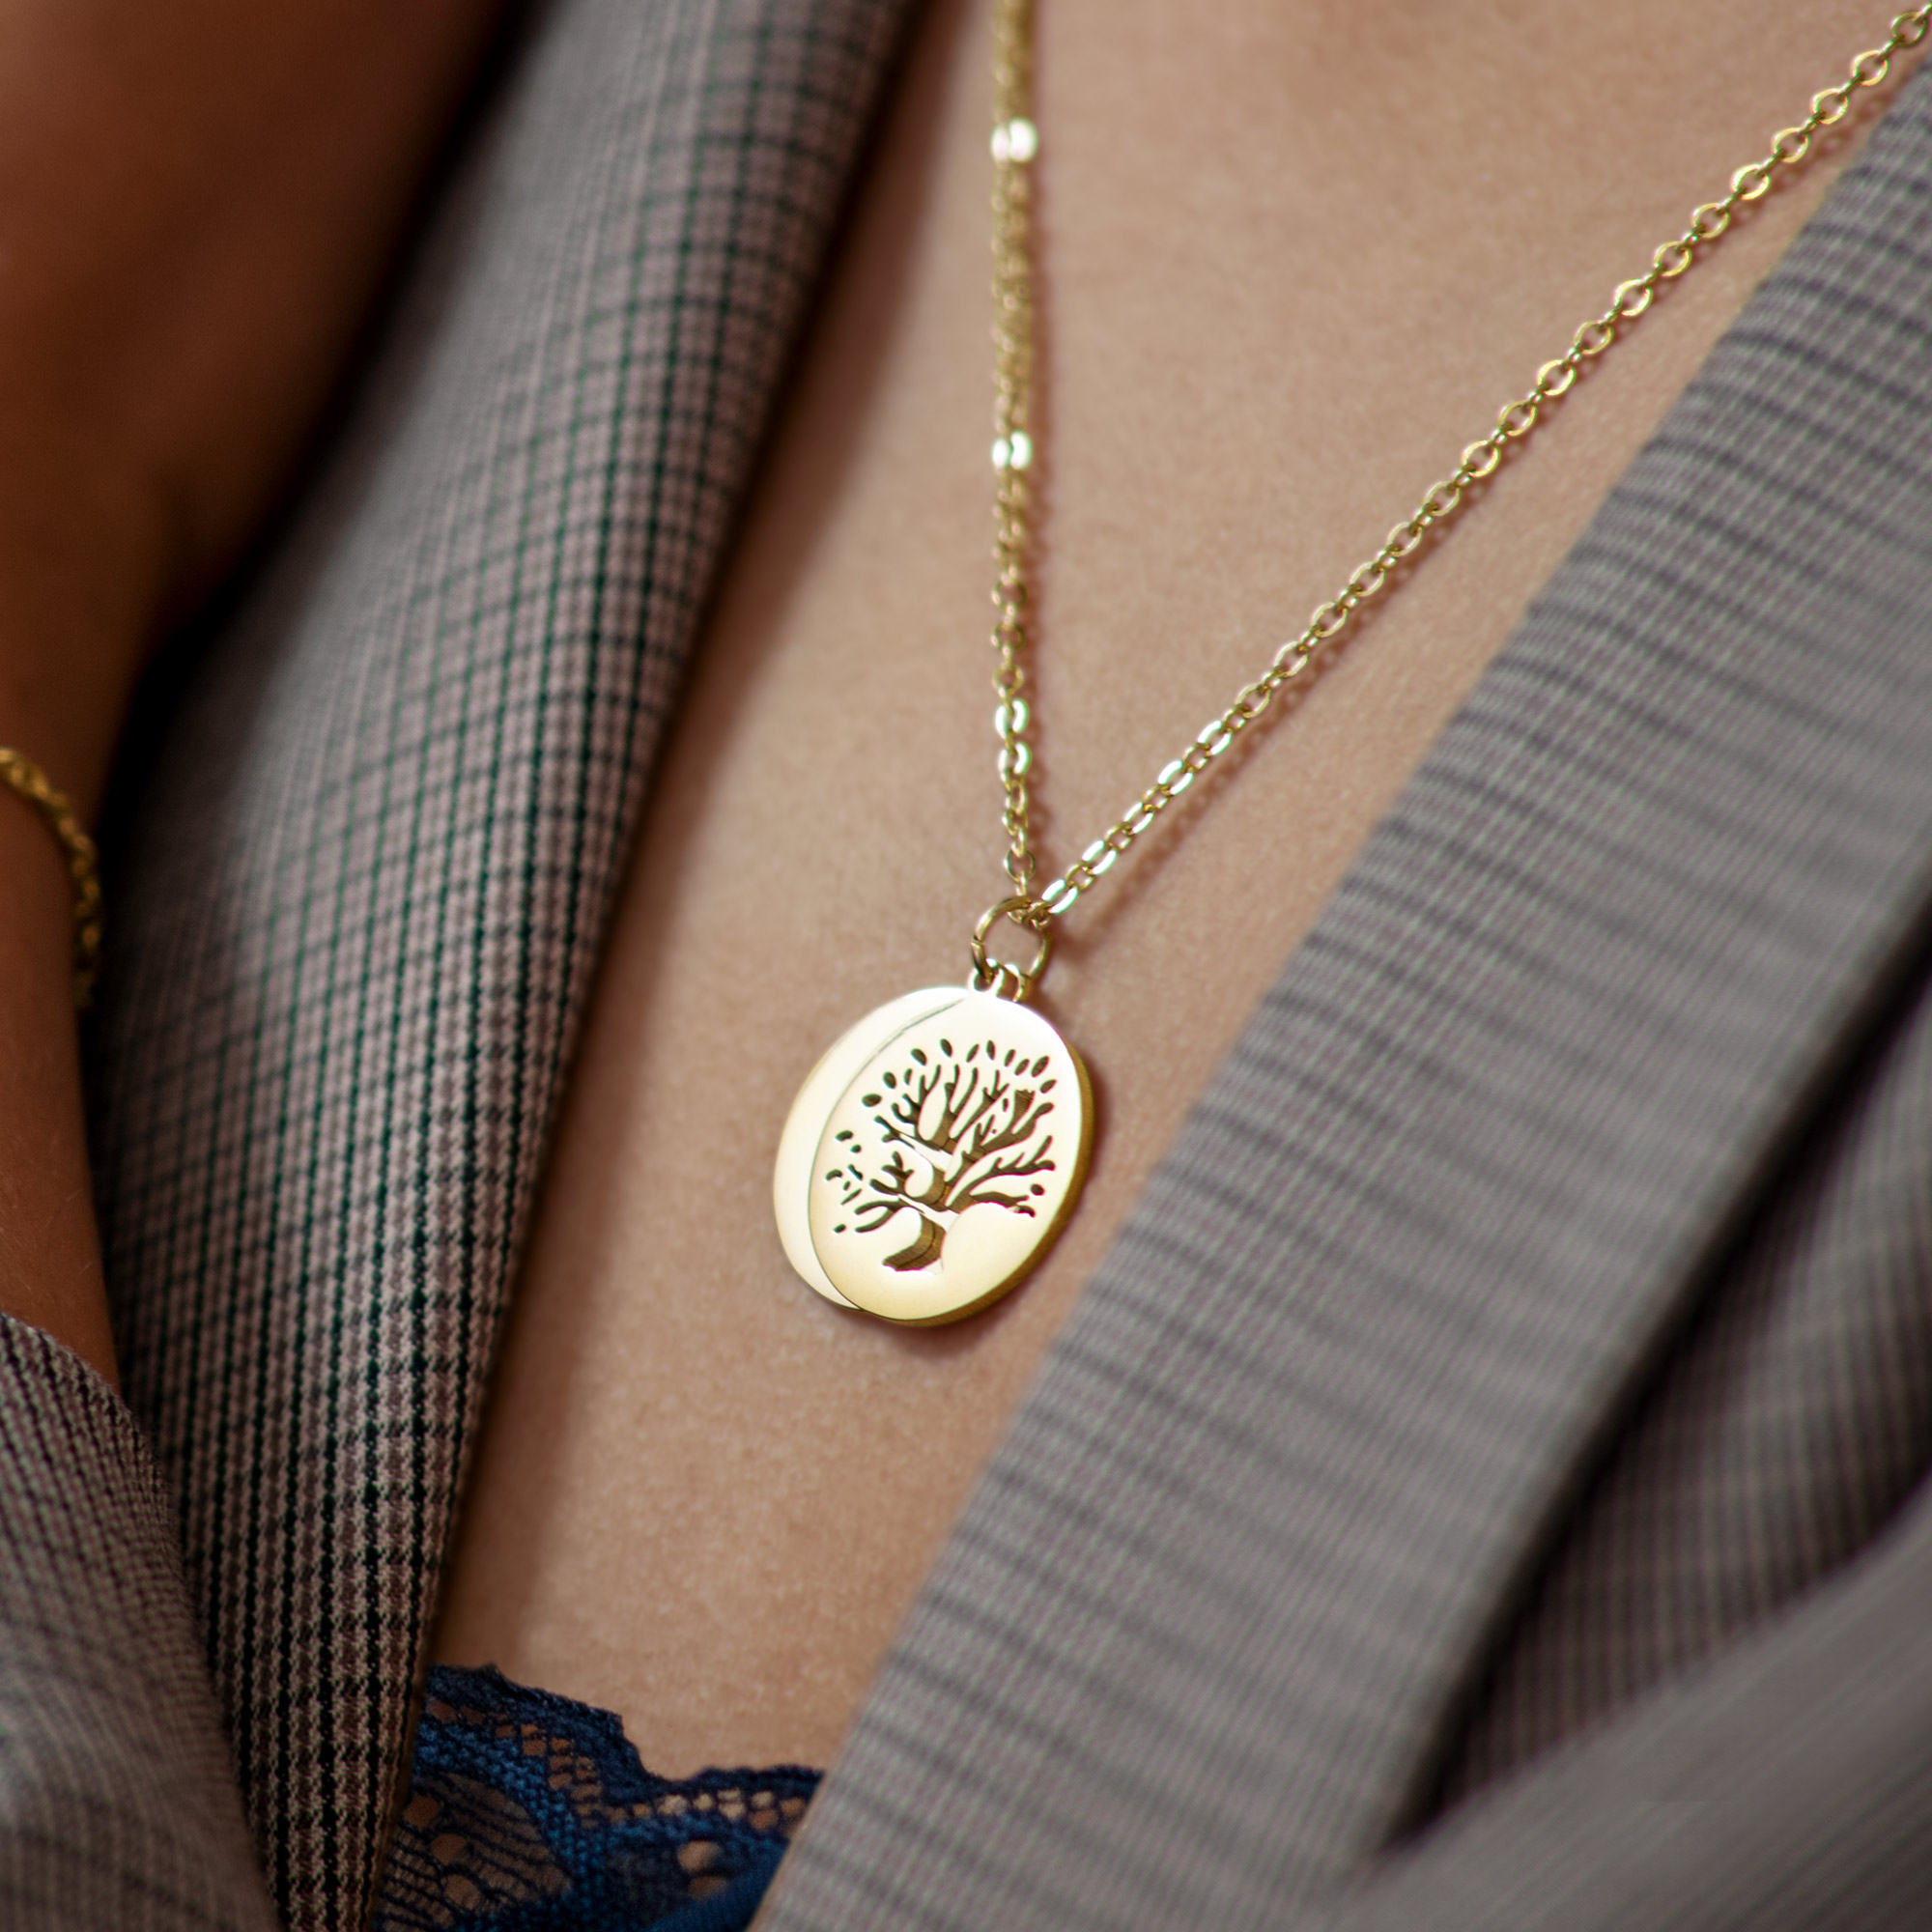 Halskette mit Gravur - Baum und Jahresringe - Gold - Personalisiert